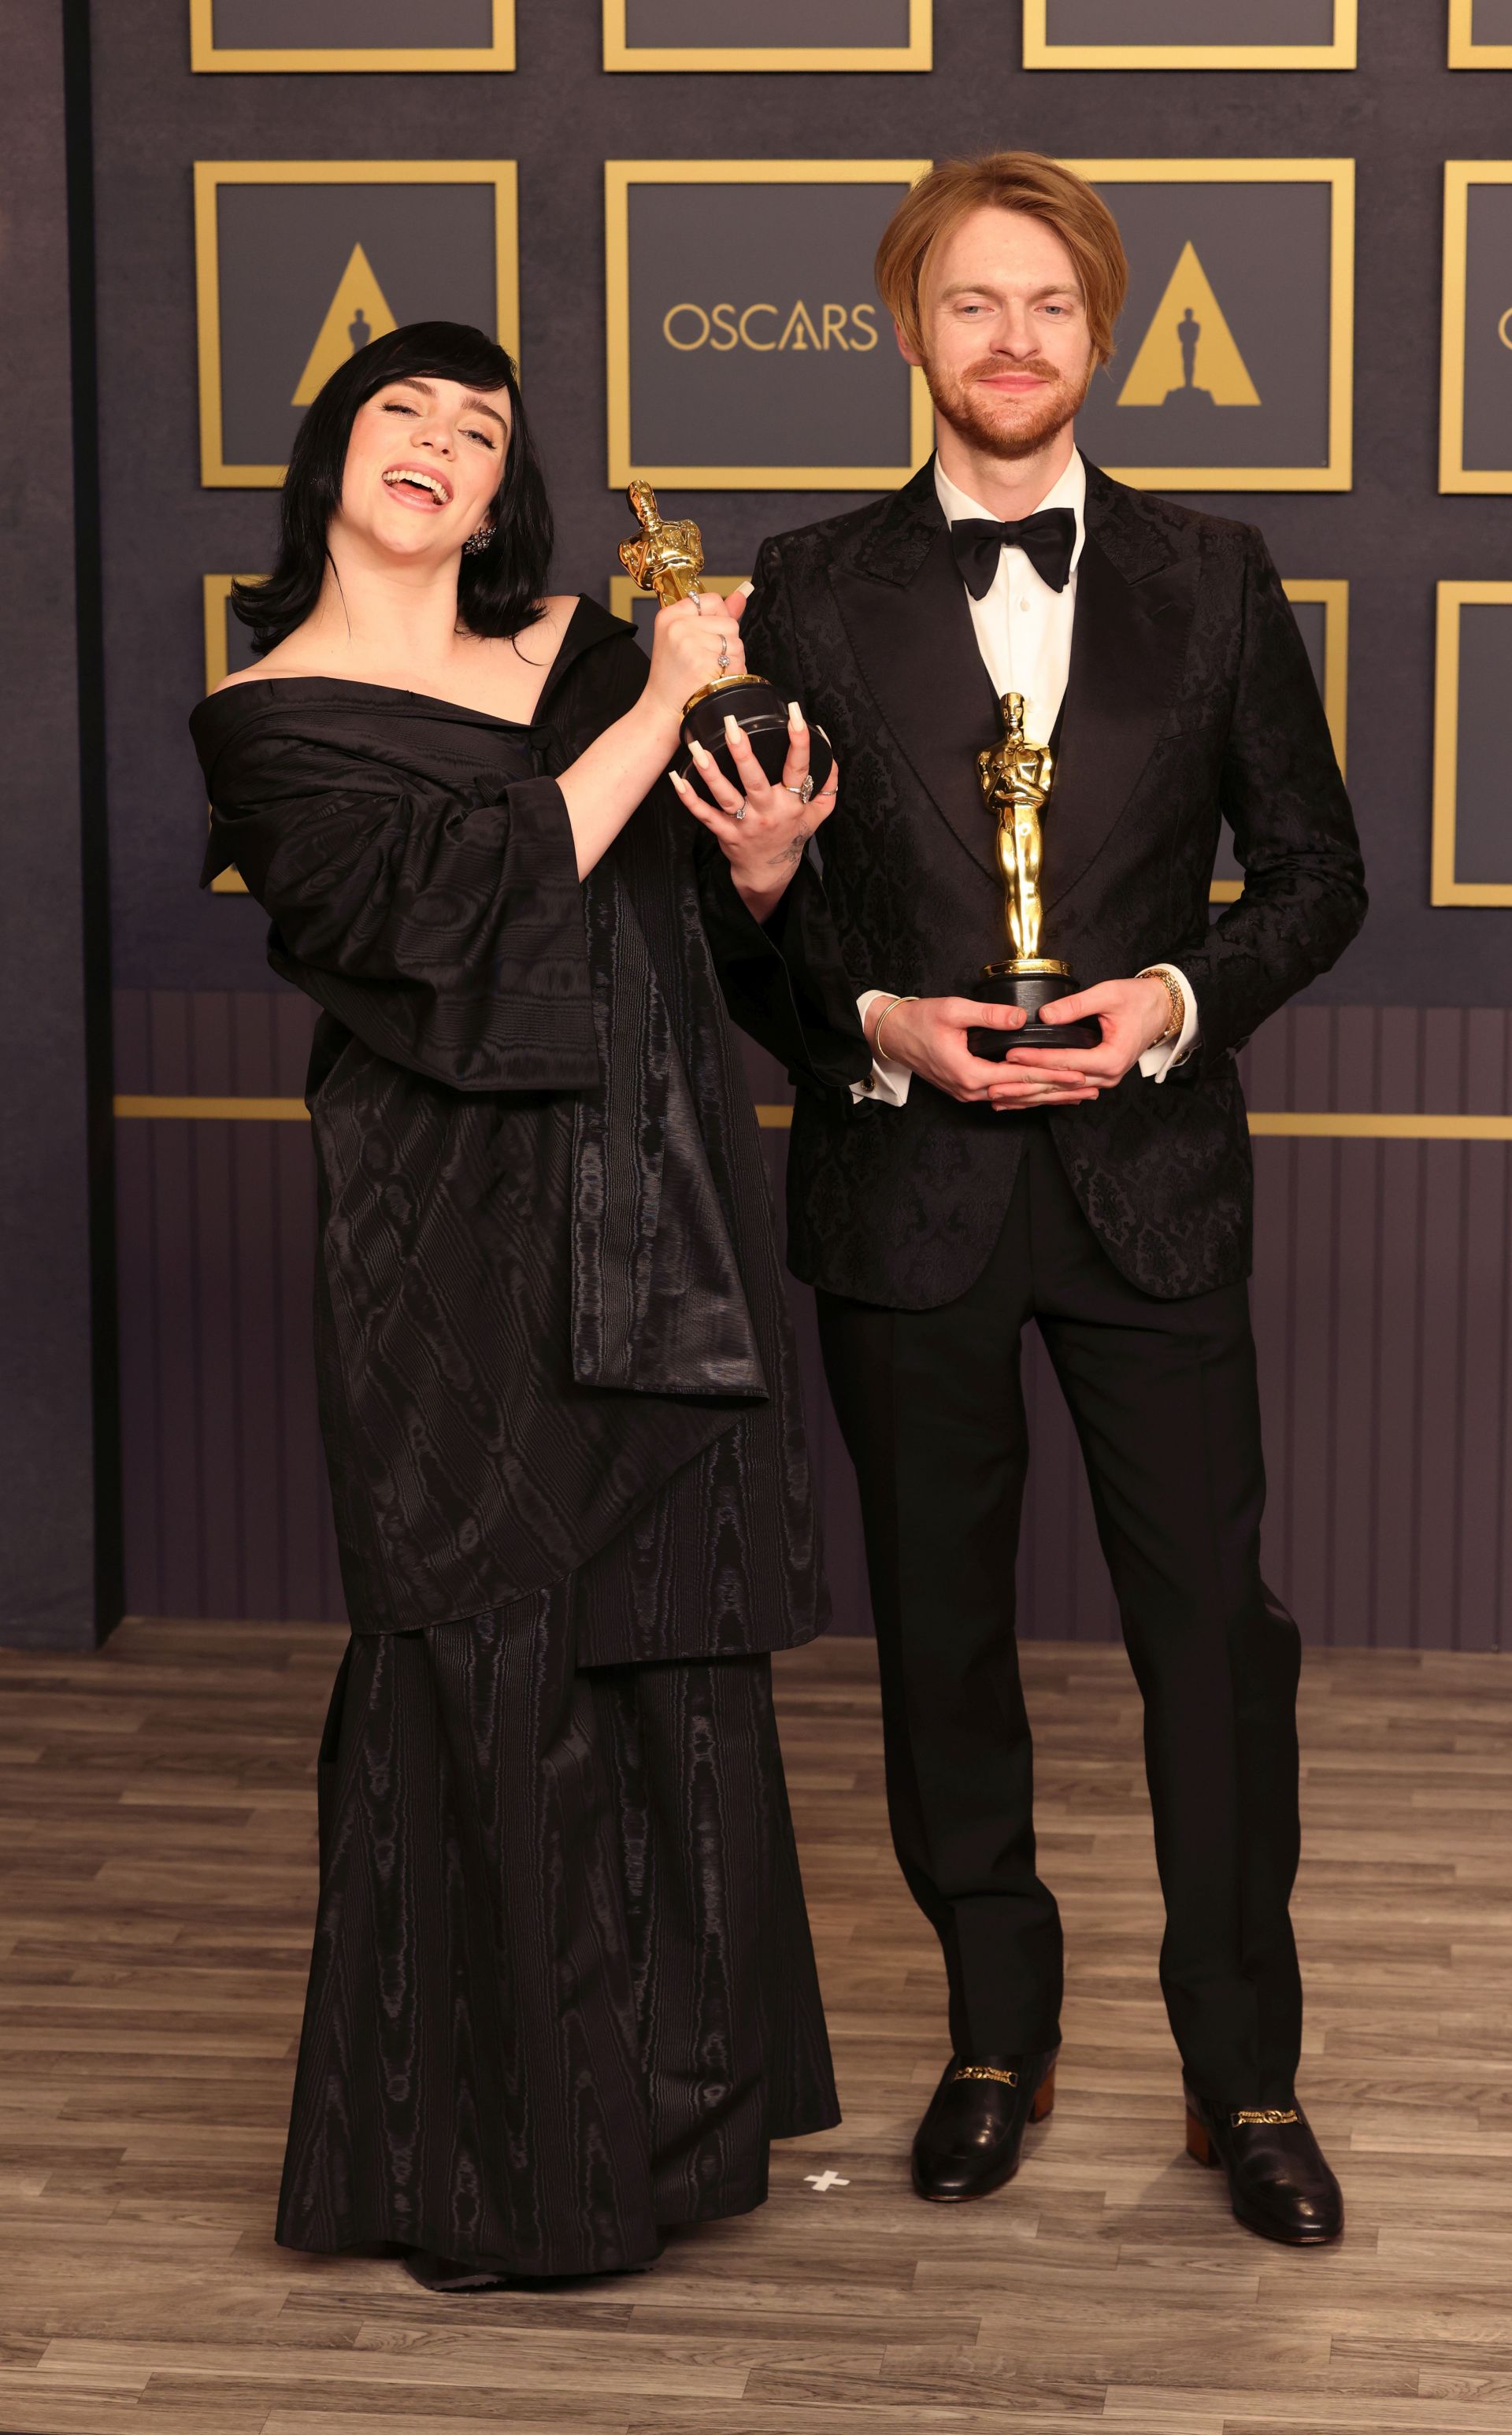 Били Айлиш и брат й Финиъс О'Конъл спечелиха "Оскар" за песента от новия филм за Джеймс Бонд "Смъртта може да почака", предаде Би Би Си.